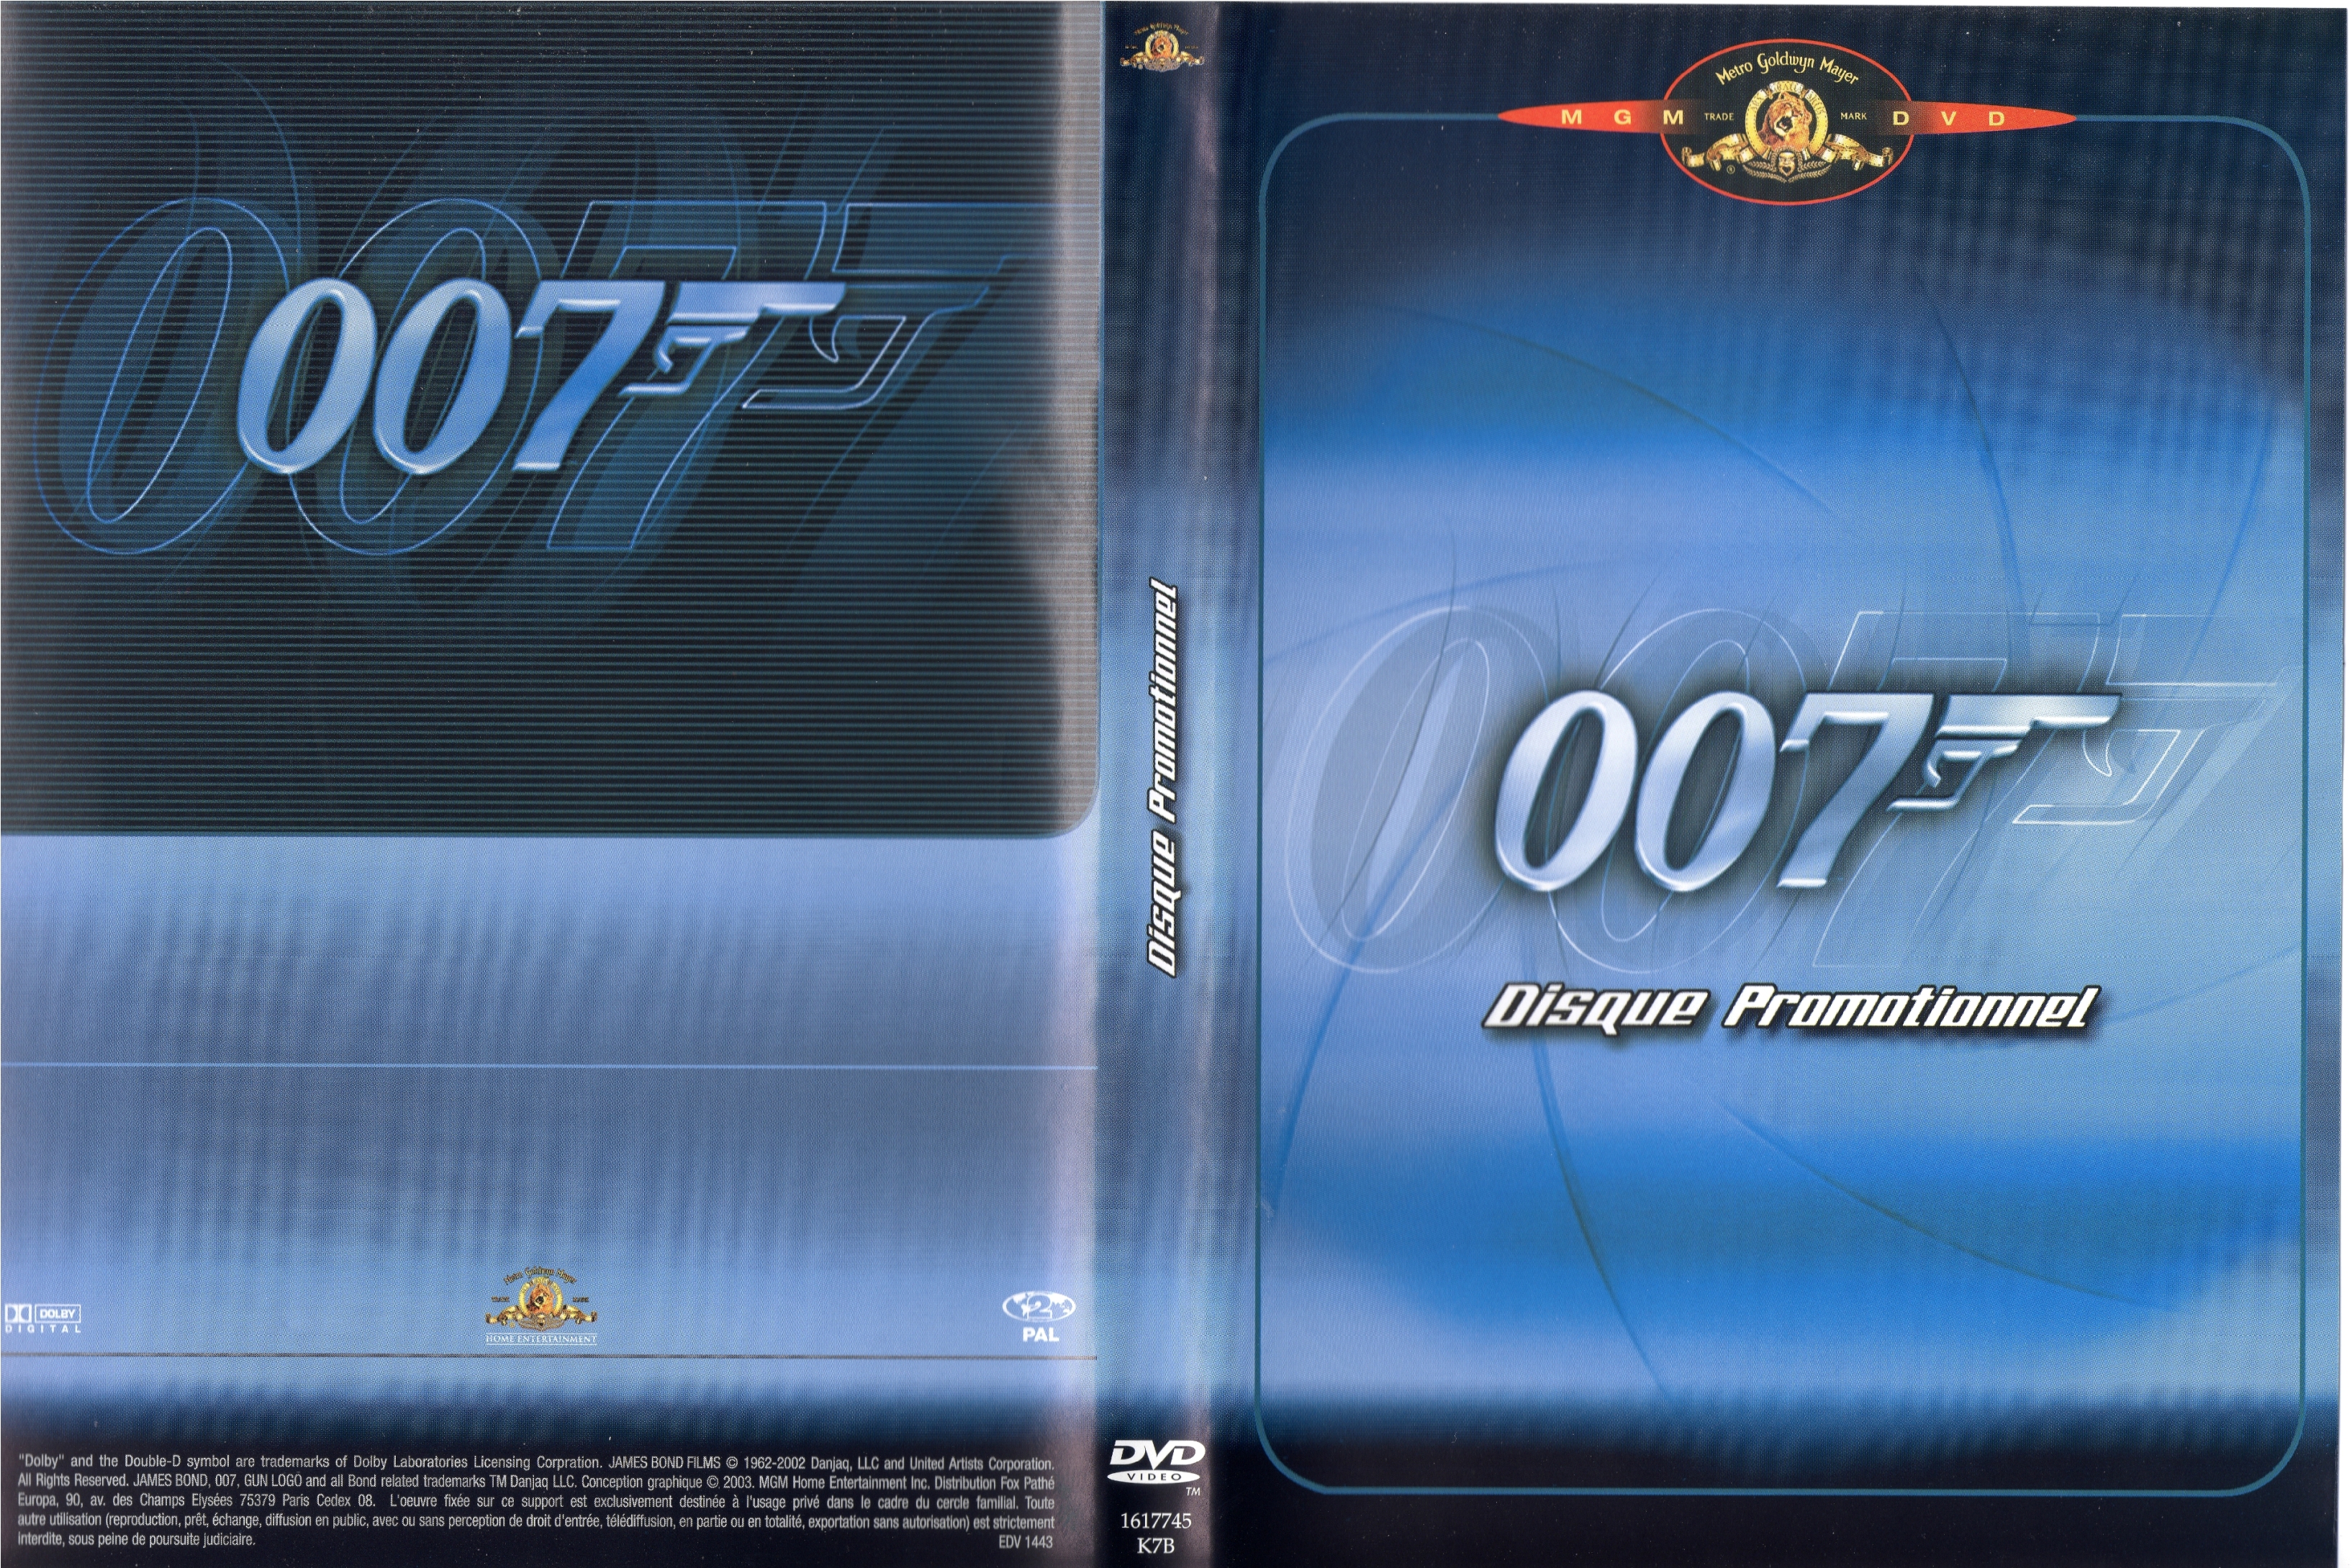 Jaquette DVD James Bond 007 - Disque promotionnel